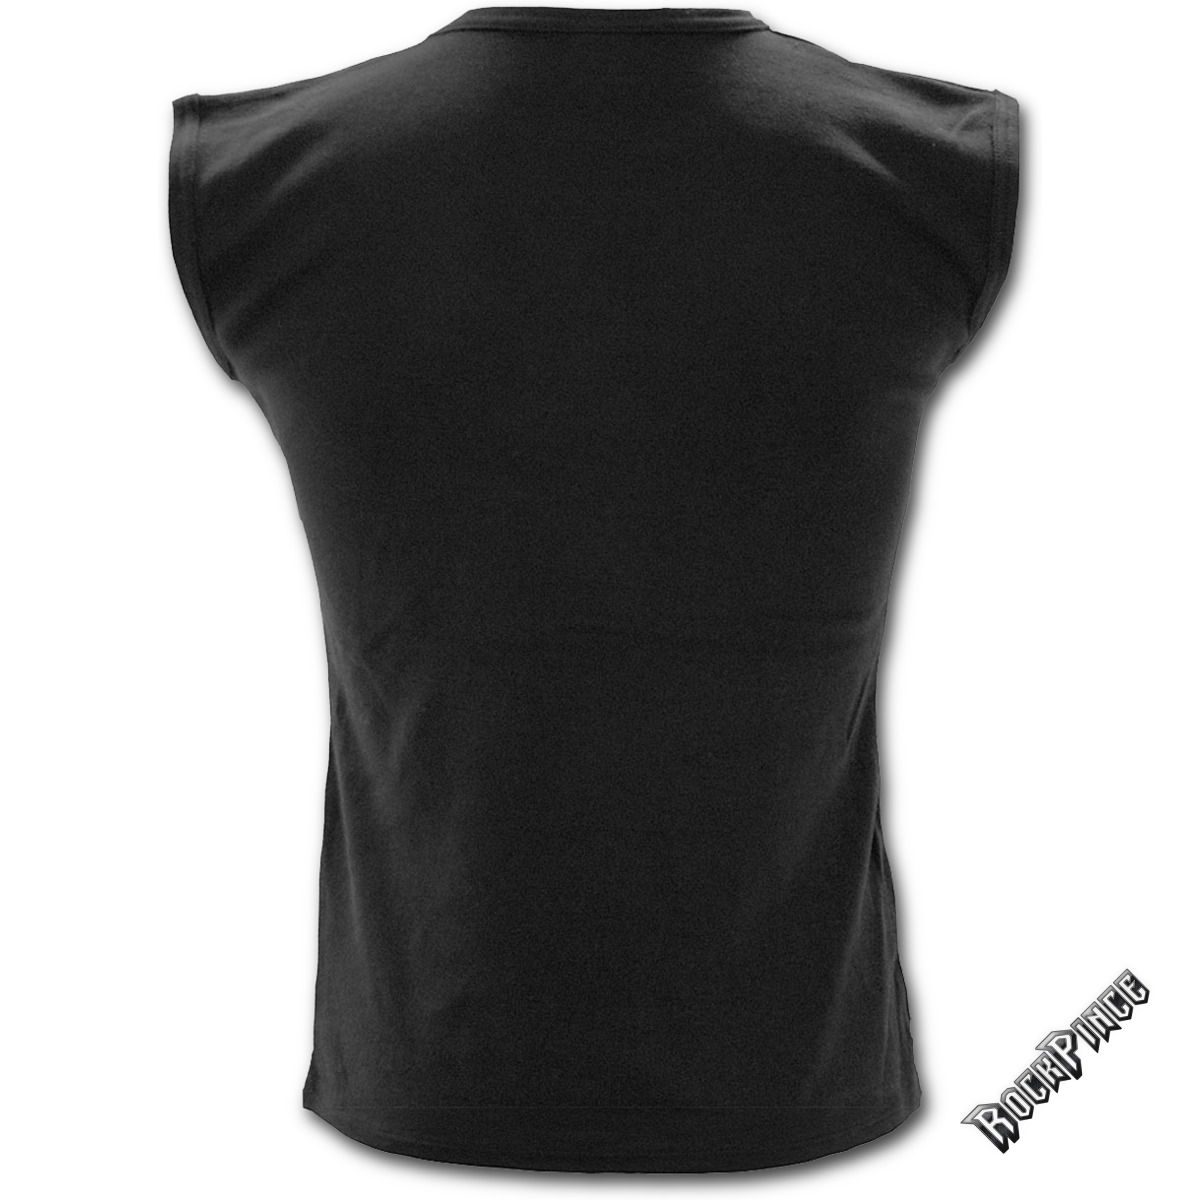 GAME OVER - Sleeveless T-Shirt Black (Plain) - T026M001